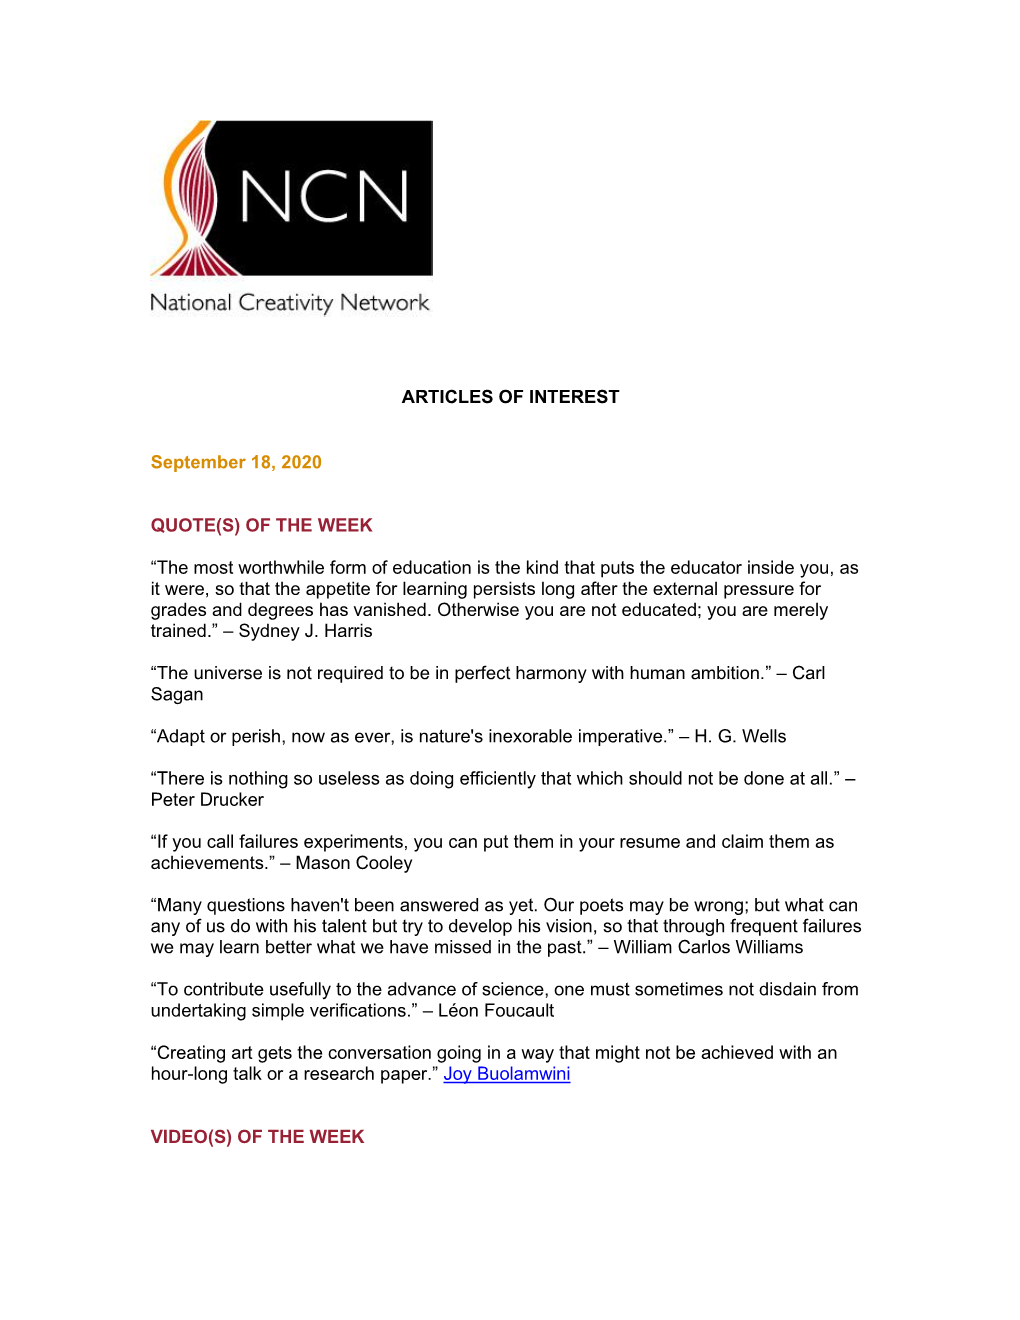 NCN Articles of Interest | September 18, 2020